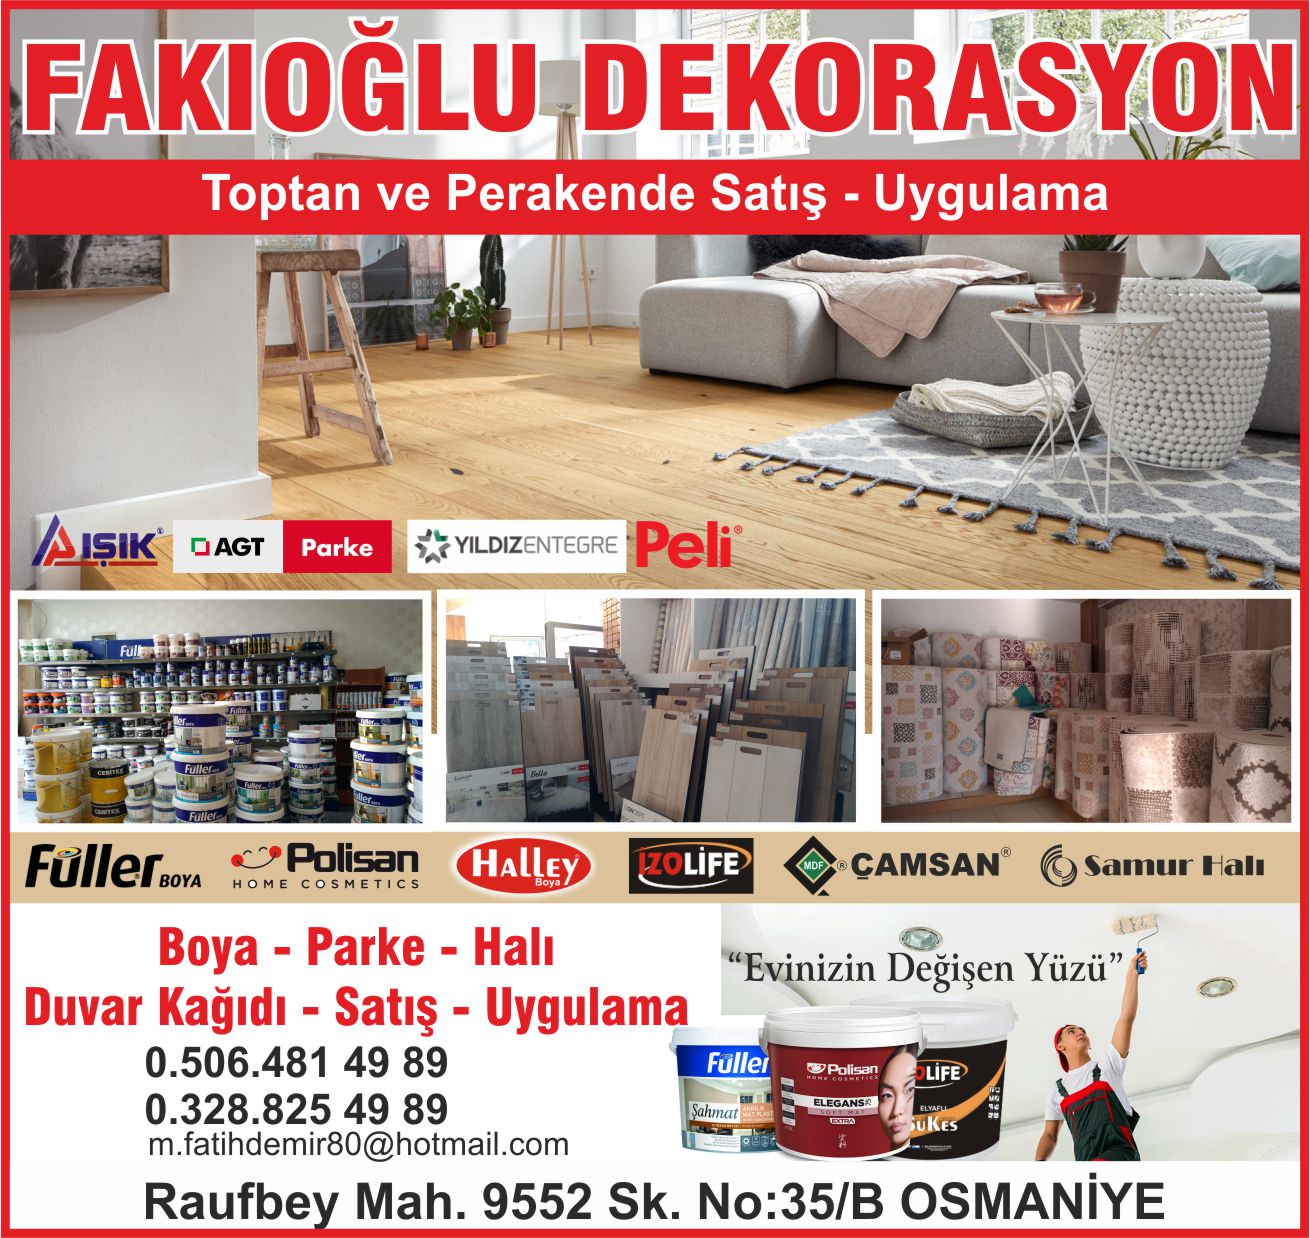 fakioglu-dekorasyon-osmaniye